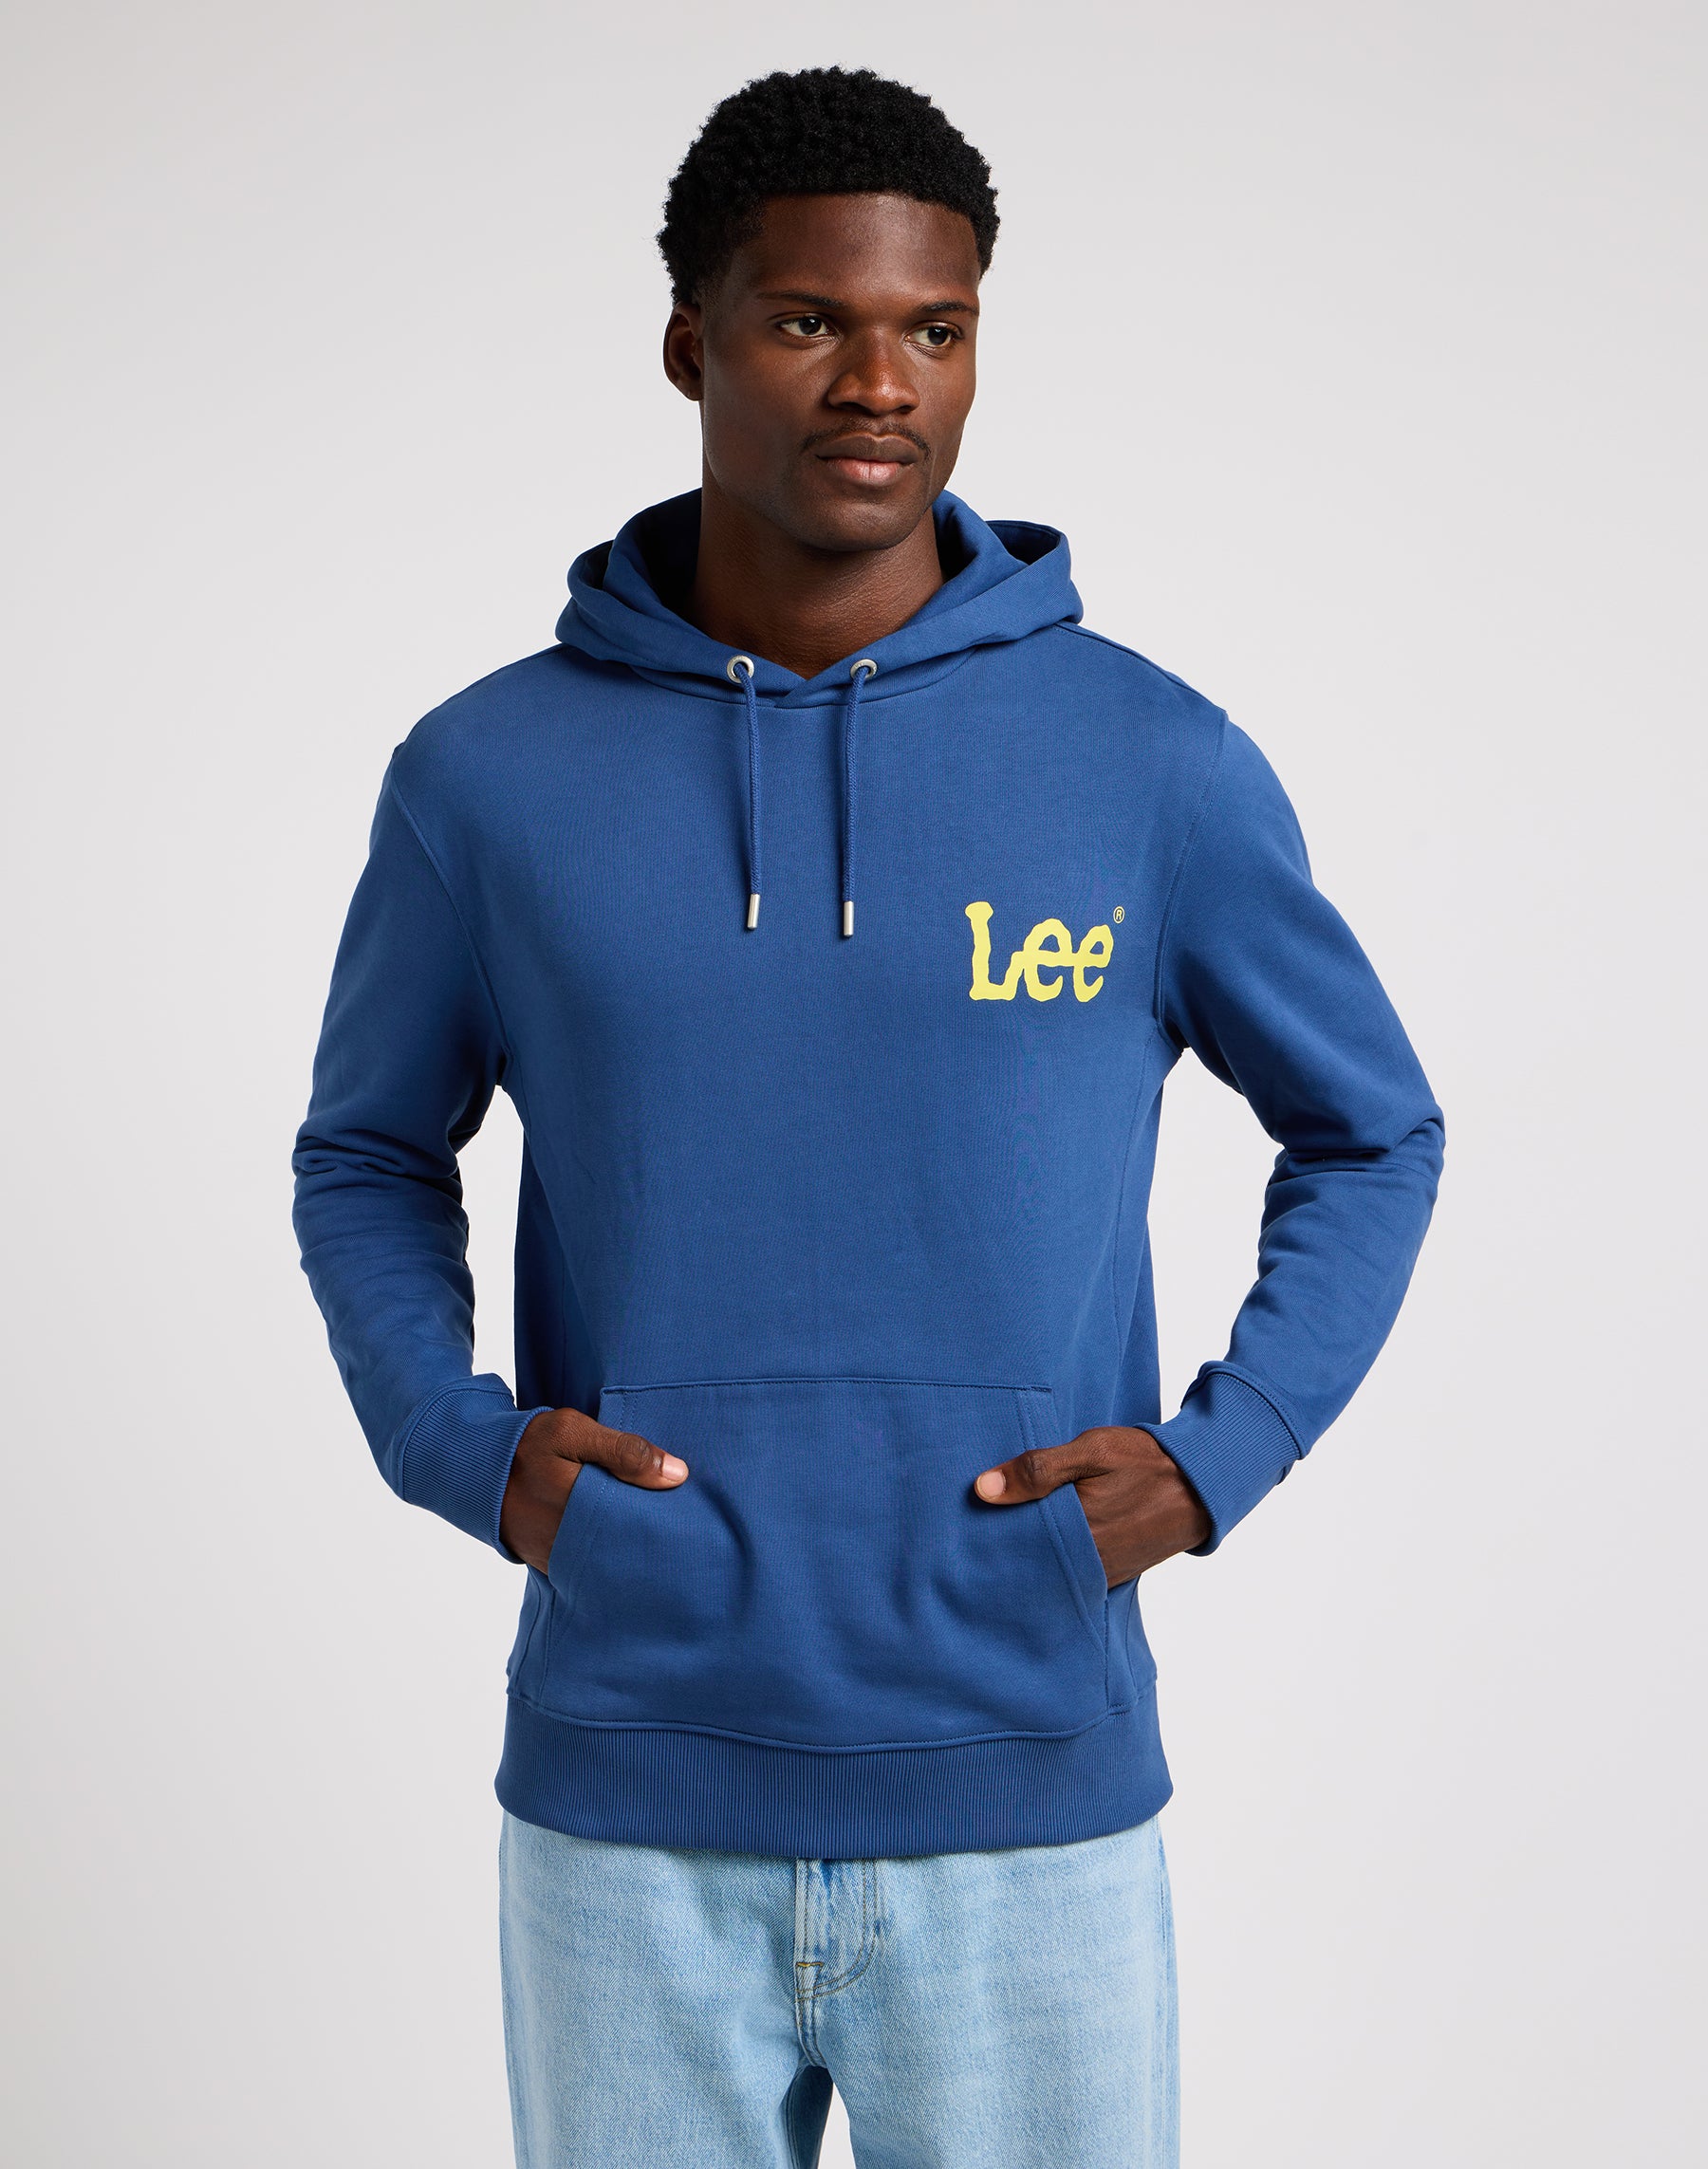 Wobbly Lee Hoodie in Midnight Navy Sweatshirts Lee   